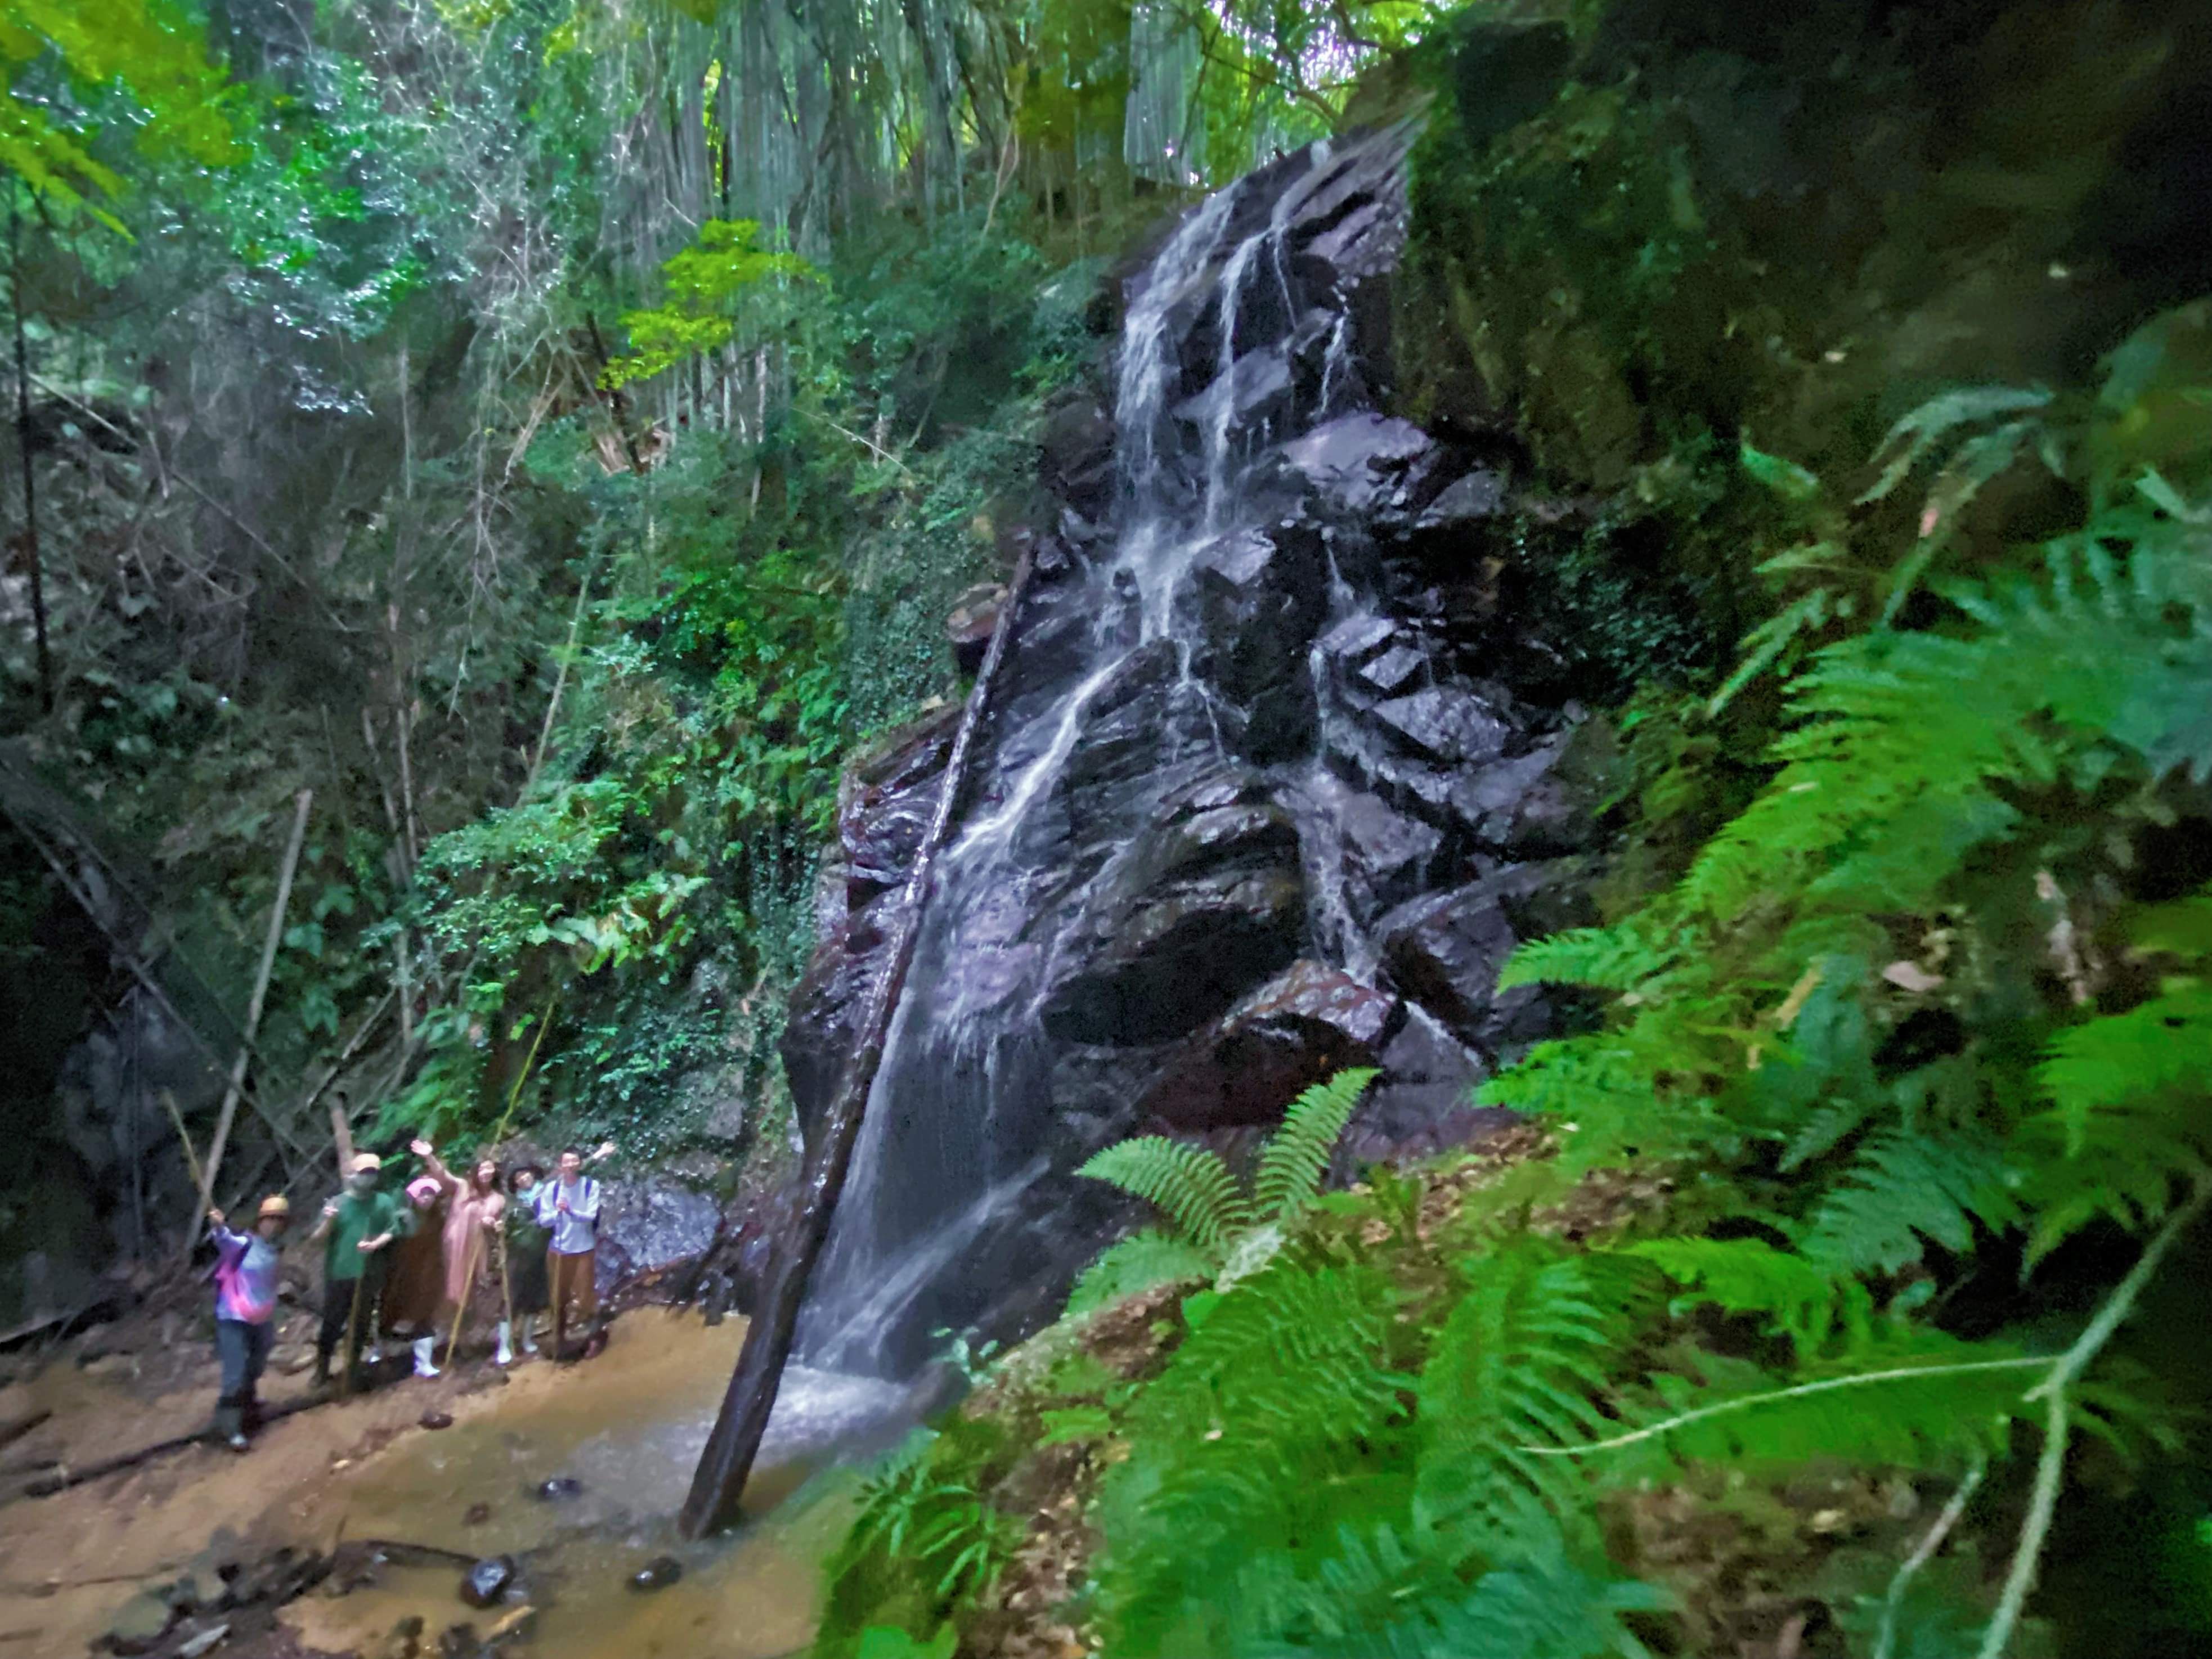 【7・8・9月限定】秘境の「がいな滝」と渓流で淡路島の夏を楽しもう! 淡路島の自然を知り尽くしたネイチャーガイド&セラピストと過ごすリトリートツアー